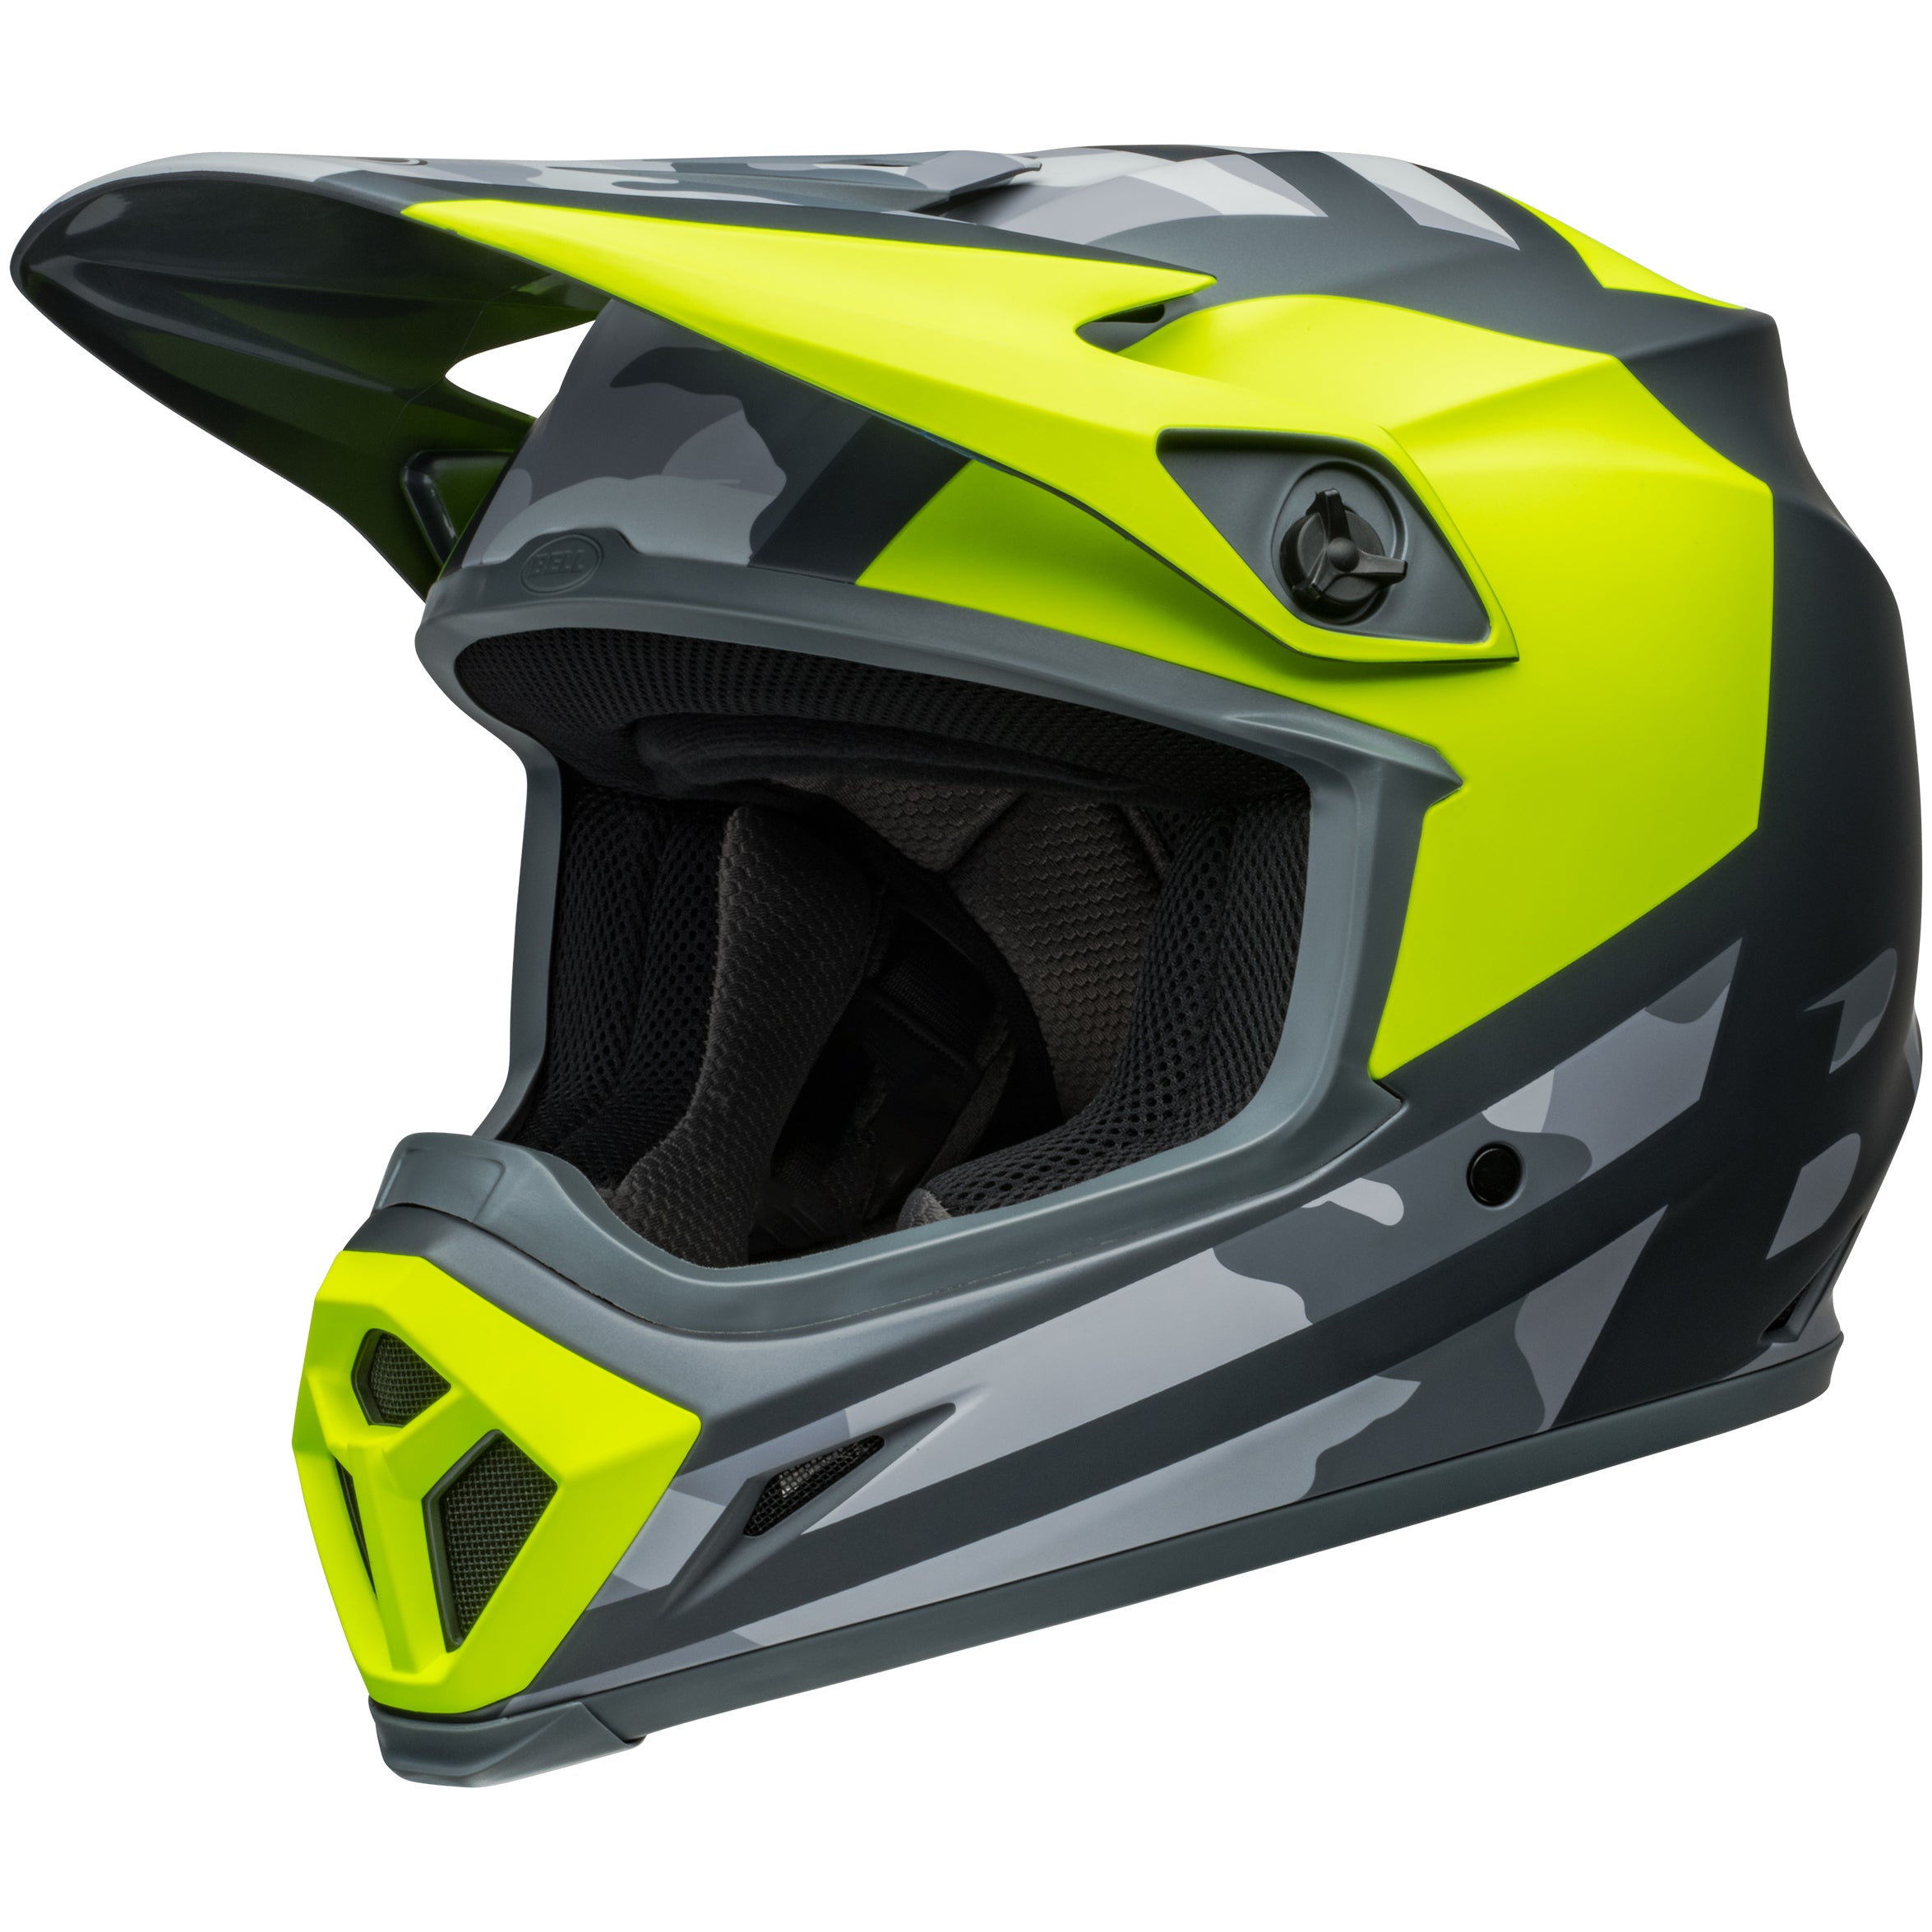 Bell MX 2024 MX-9 Mips Adult Helmet in Alter Ego Hi-Viz/Camo design, ECE6 certified, side view